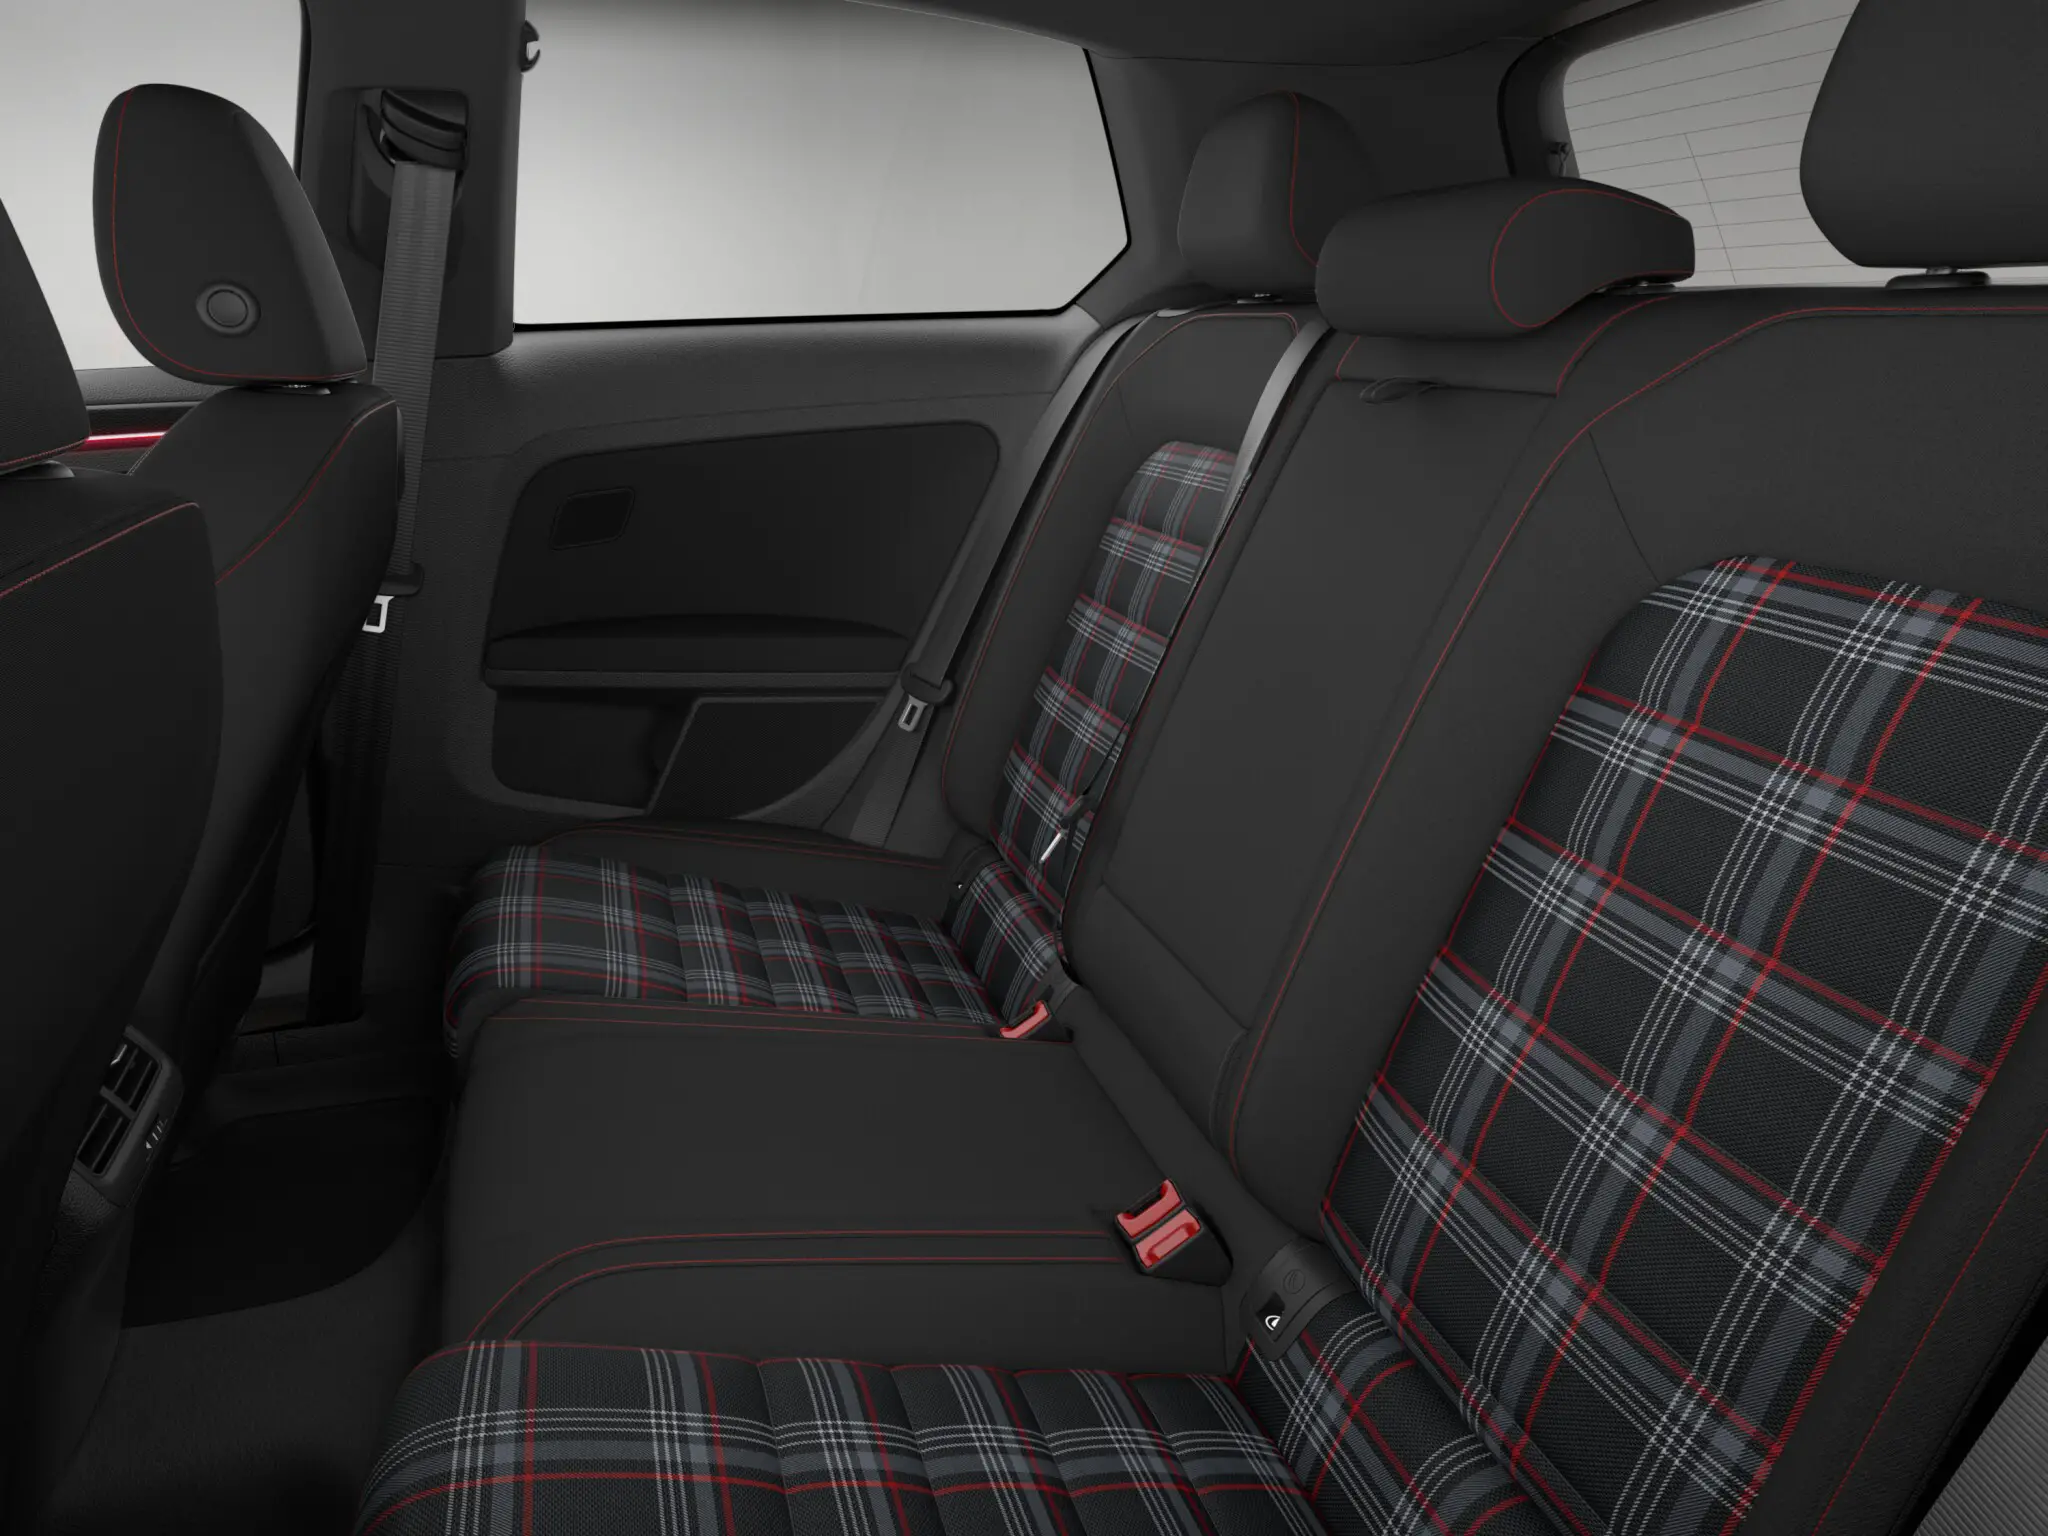 Volkswagen Golf GTI S 2 Door interior rear seat view